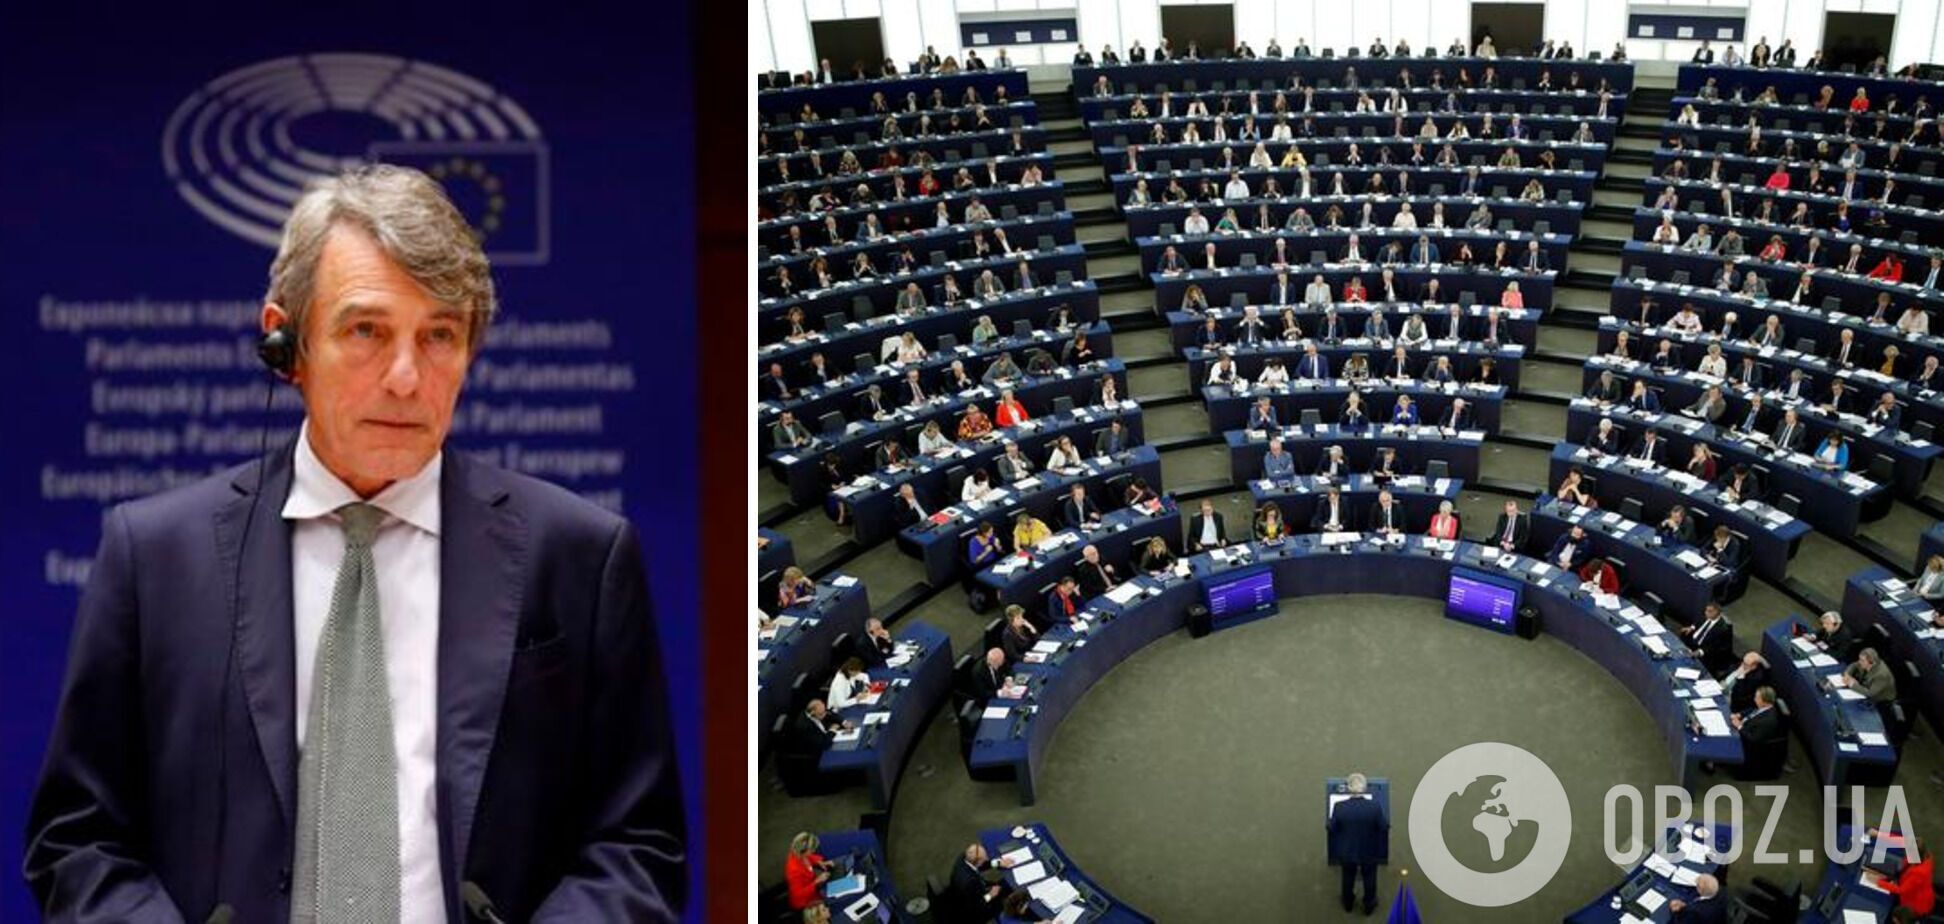 Давид Сассолі обіймав посаду голови Європарламенту з 2019 року